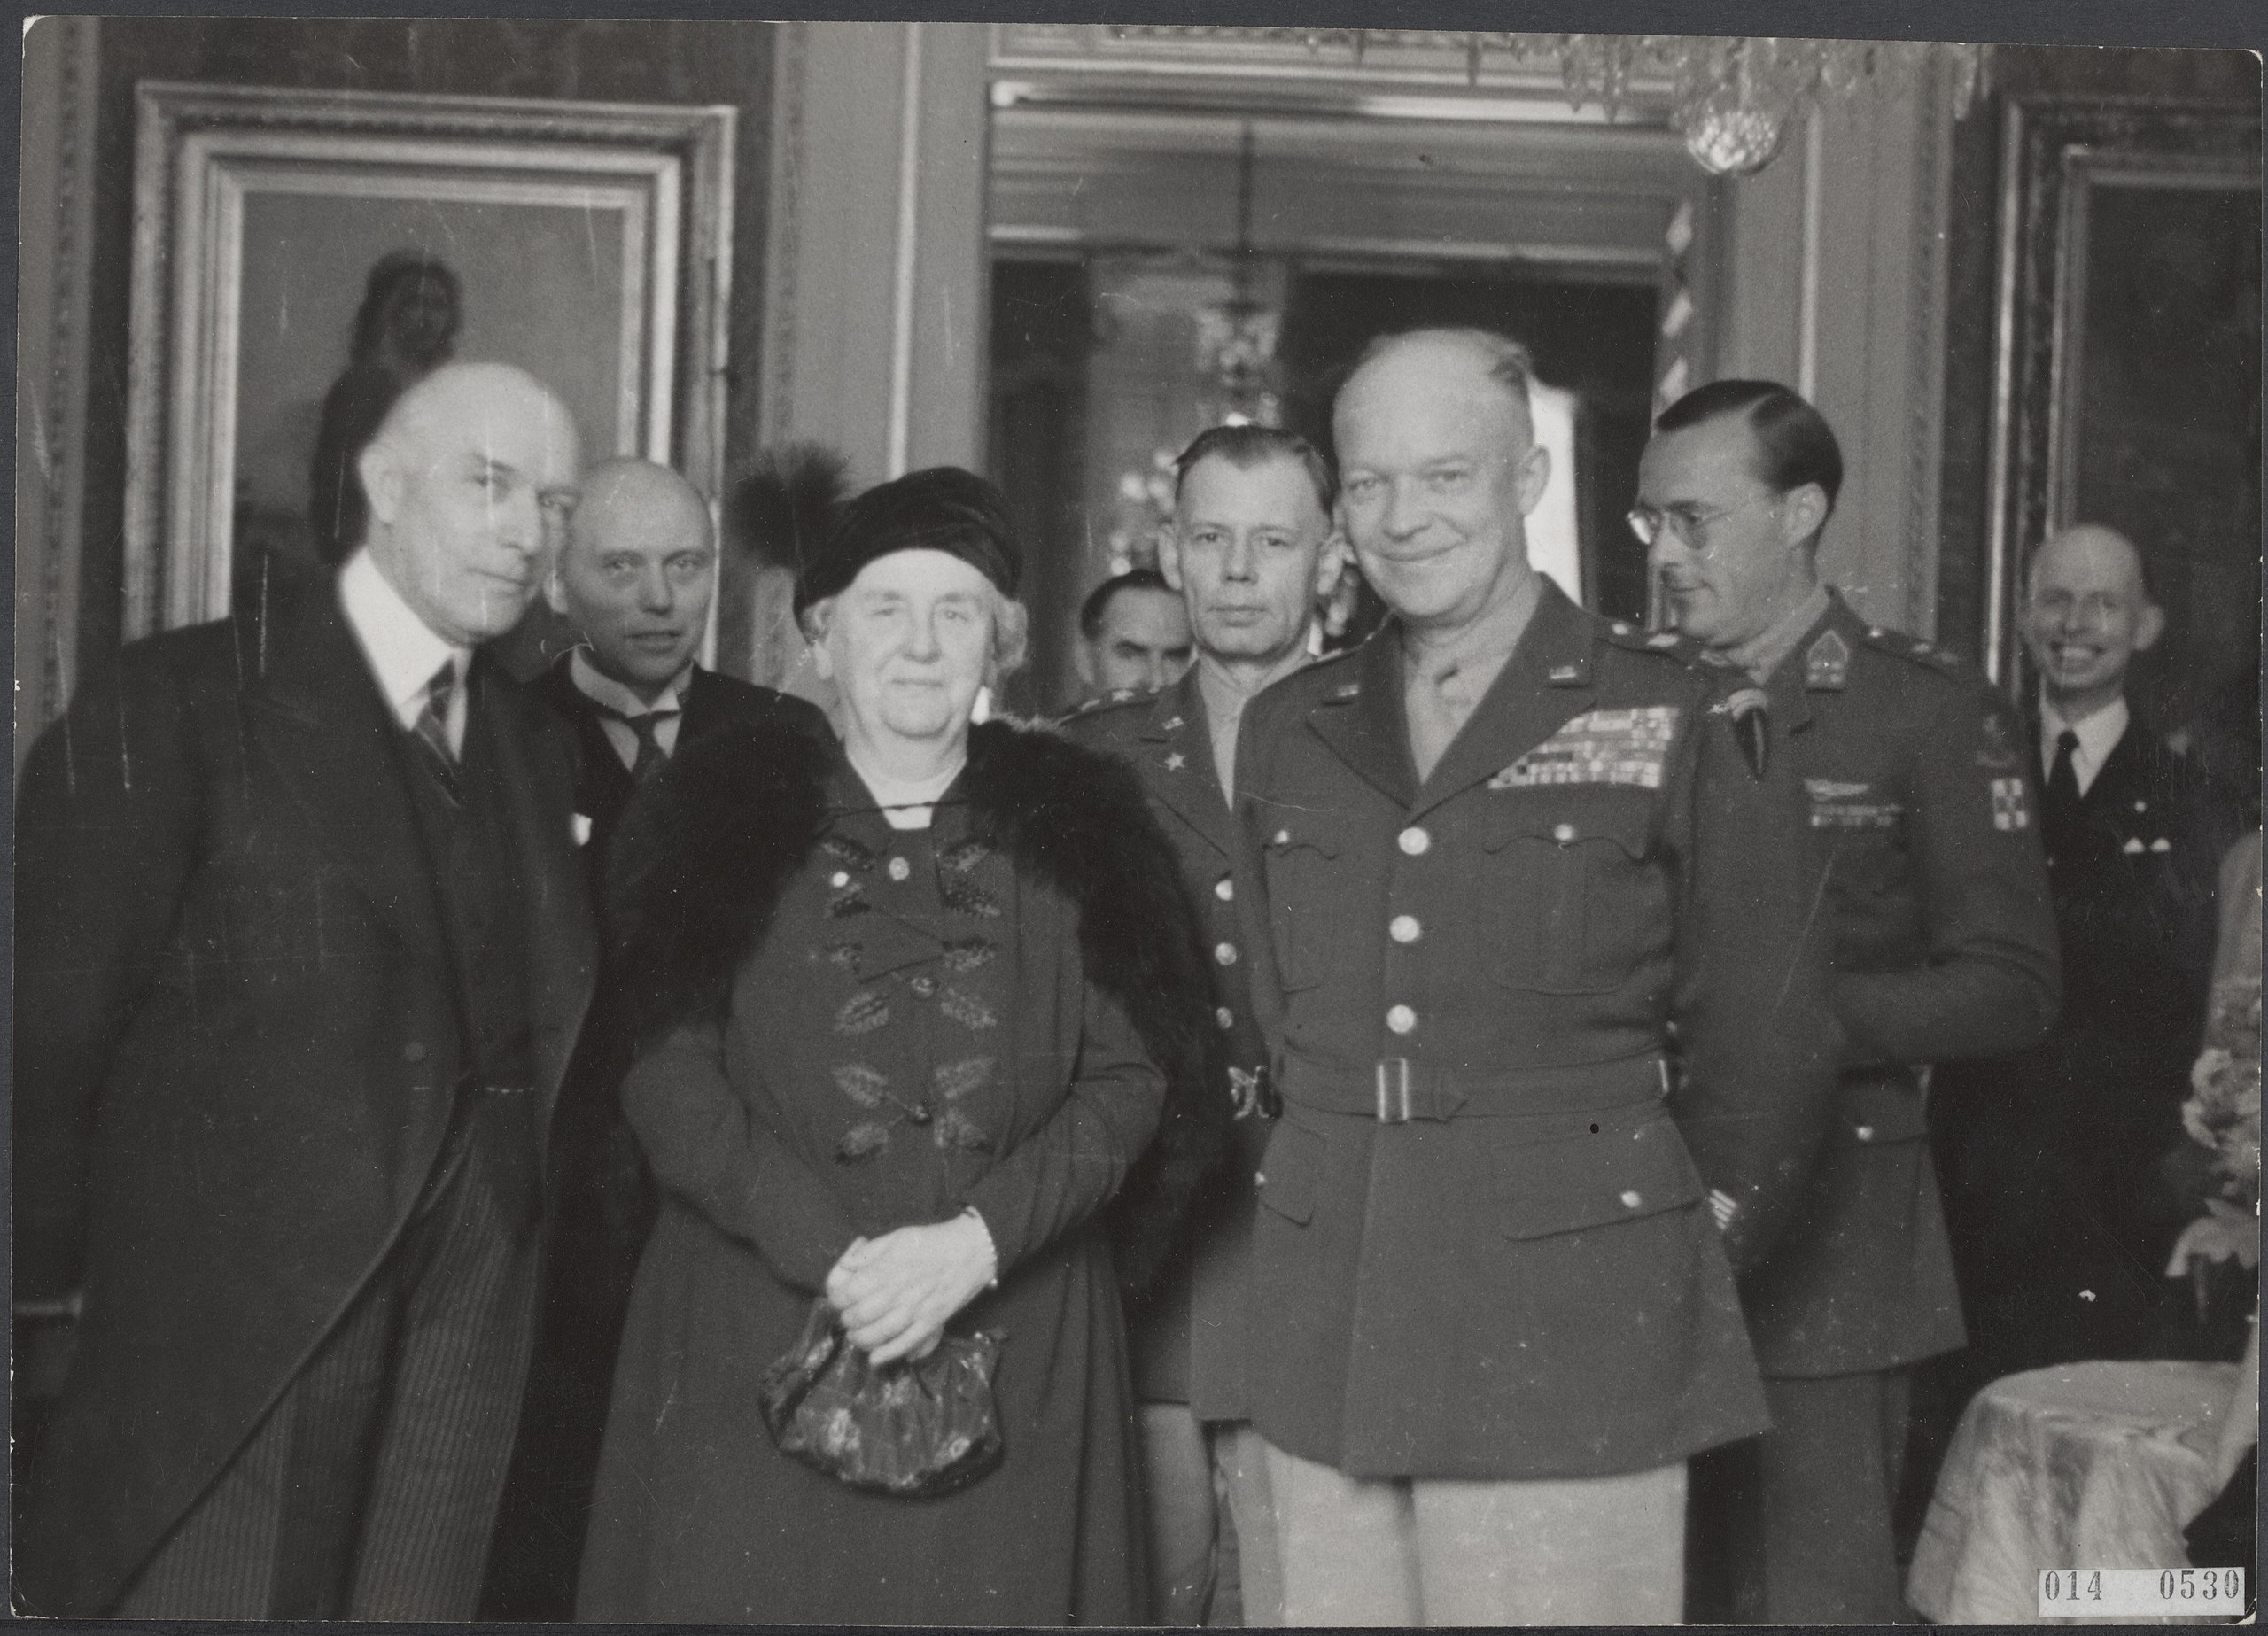 1945 Eisenhower met koningin Wilhelmina in Paleis Lange Voorhout vlnr burgemeester De Monchy minister president W Schermerhorn koningin Wilhelmina chef staf Bedell